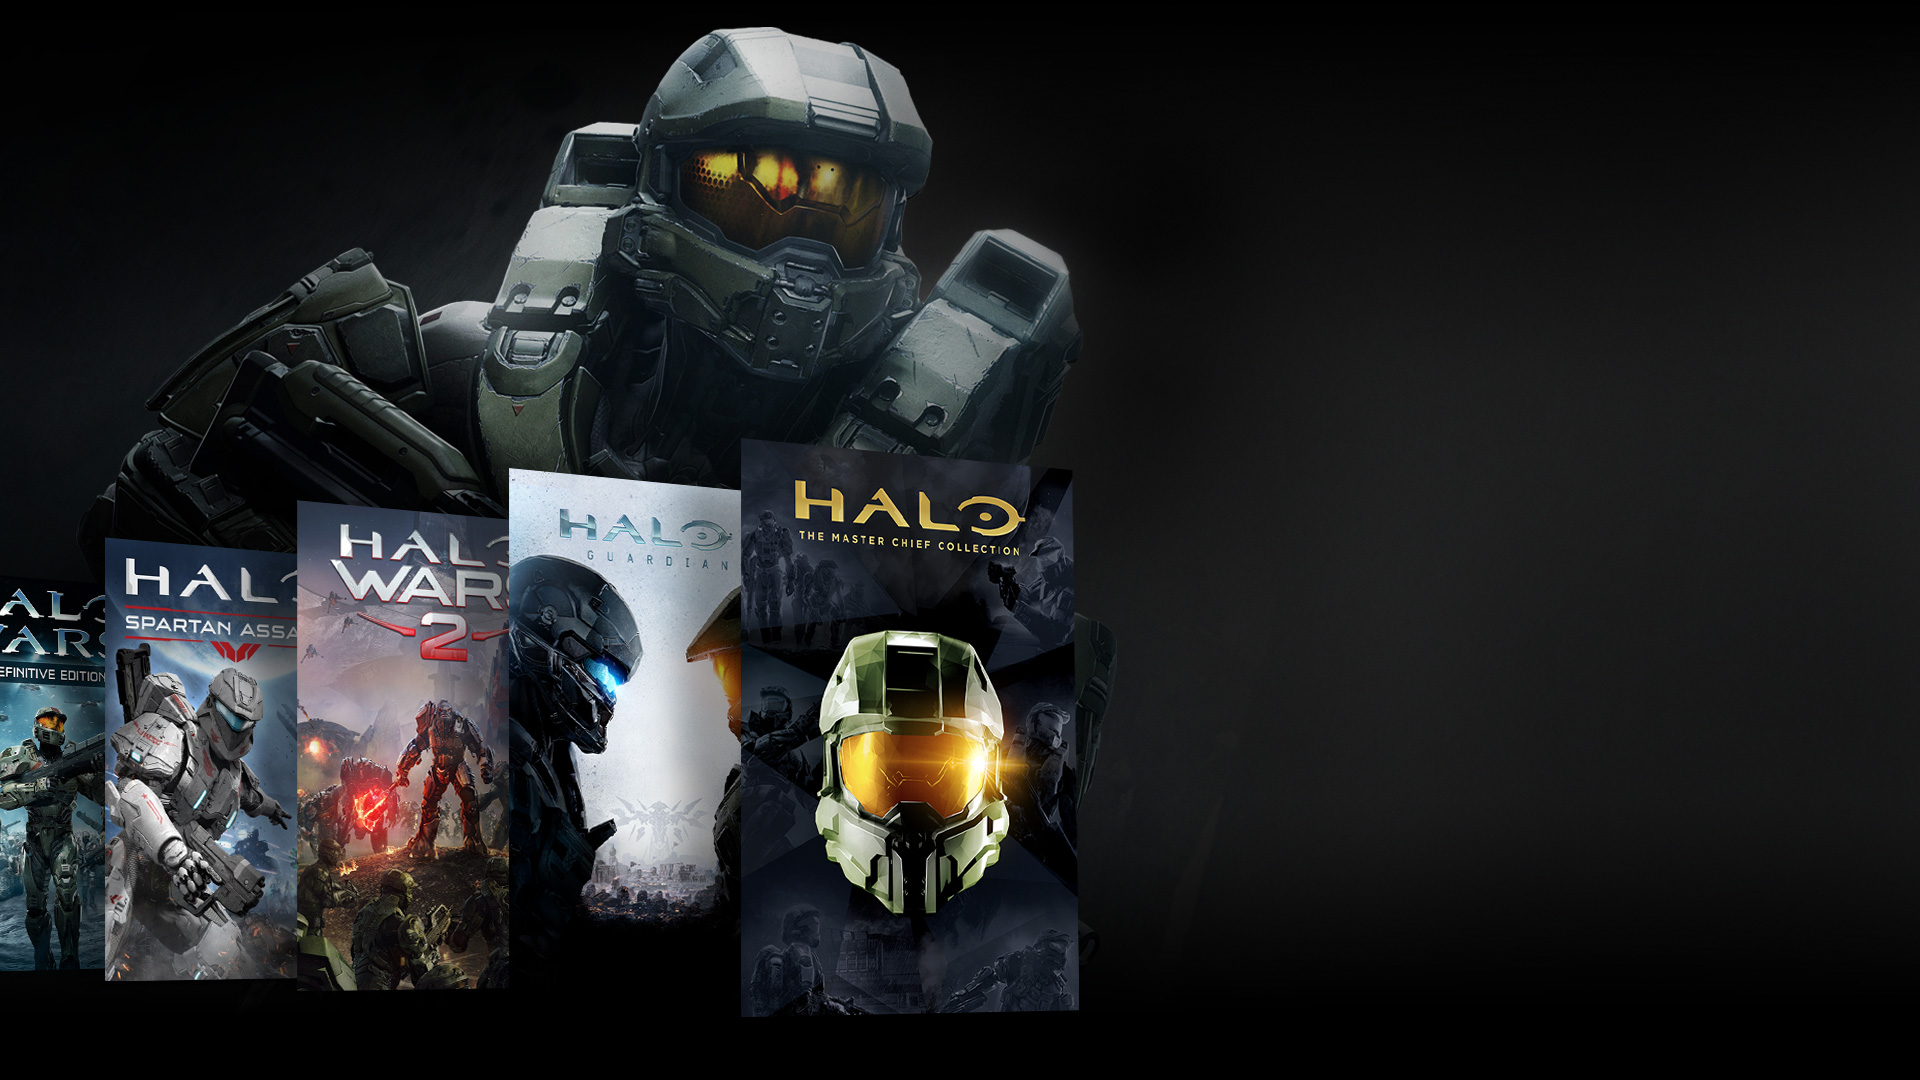 Vista frontale di un personaggio di Halo in piedi dietro un collage di giochi della serie Halo